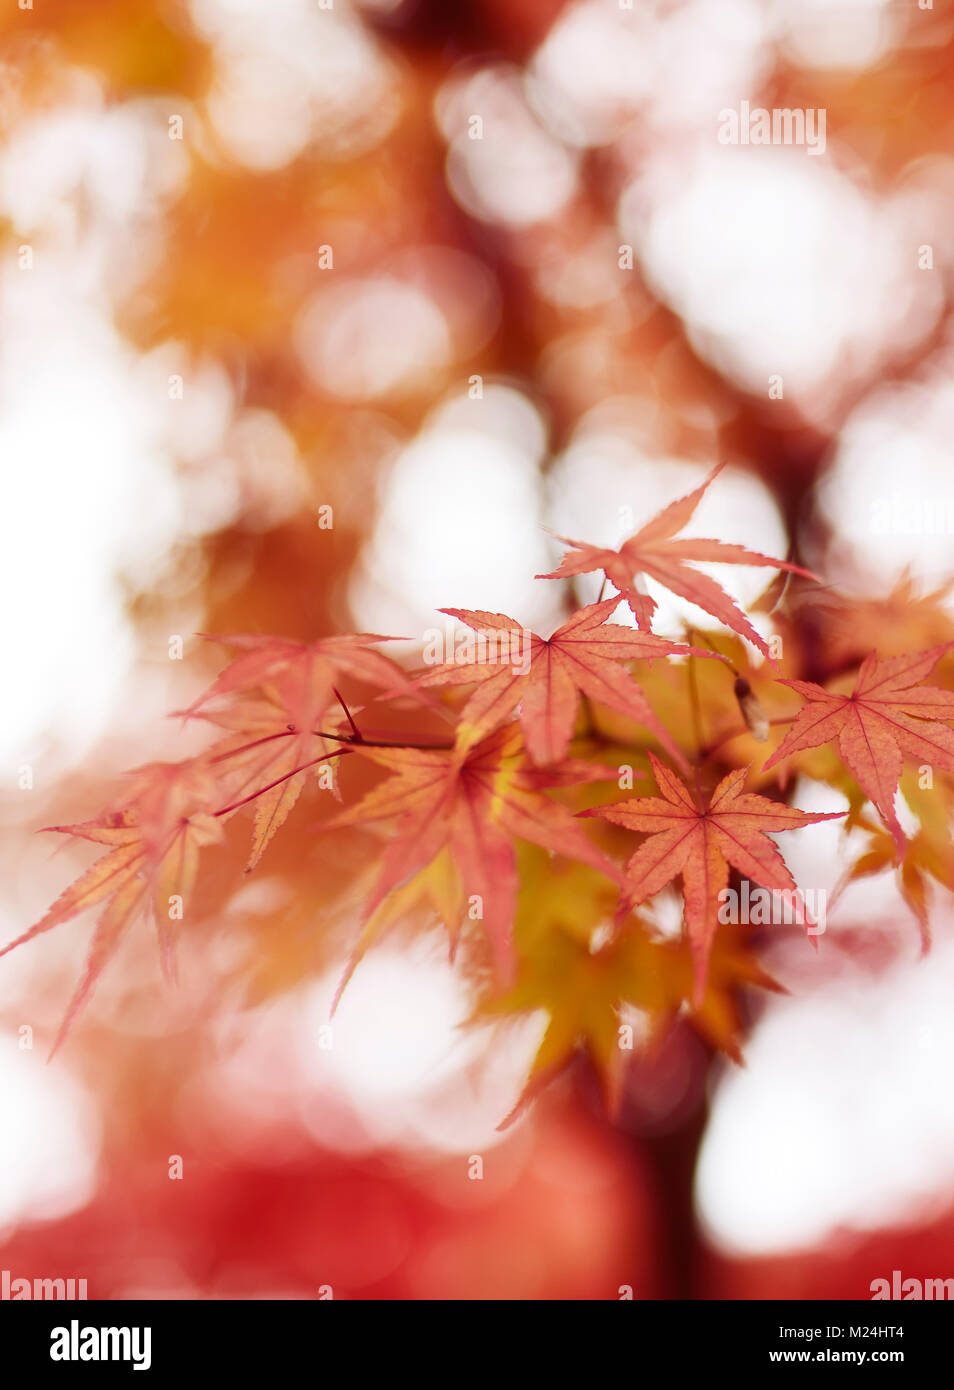 Beau gros plan artistique de Japanese maple, Acer palmatum, feuilles rouges en automne rougeoyant du soleil brumeux, abstract background, Kyoto, Japon Banque D'Images